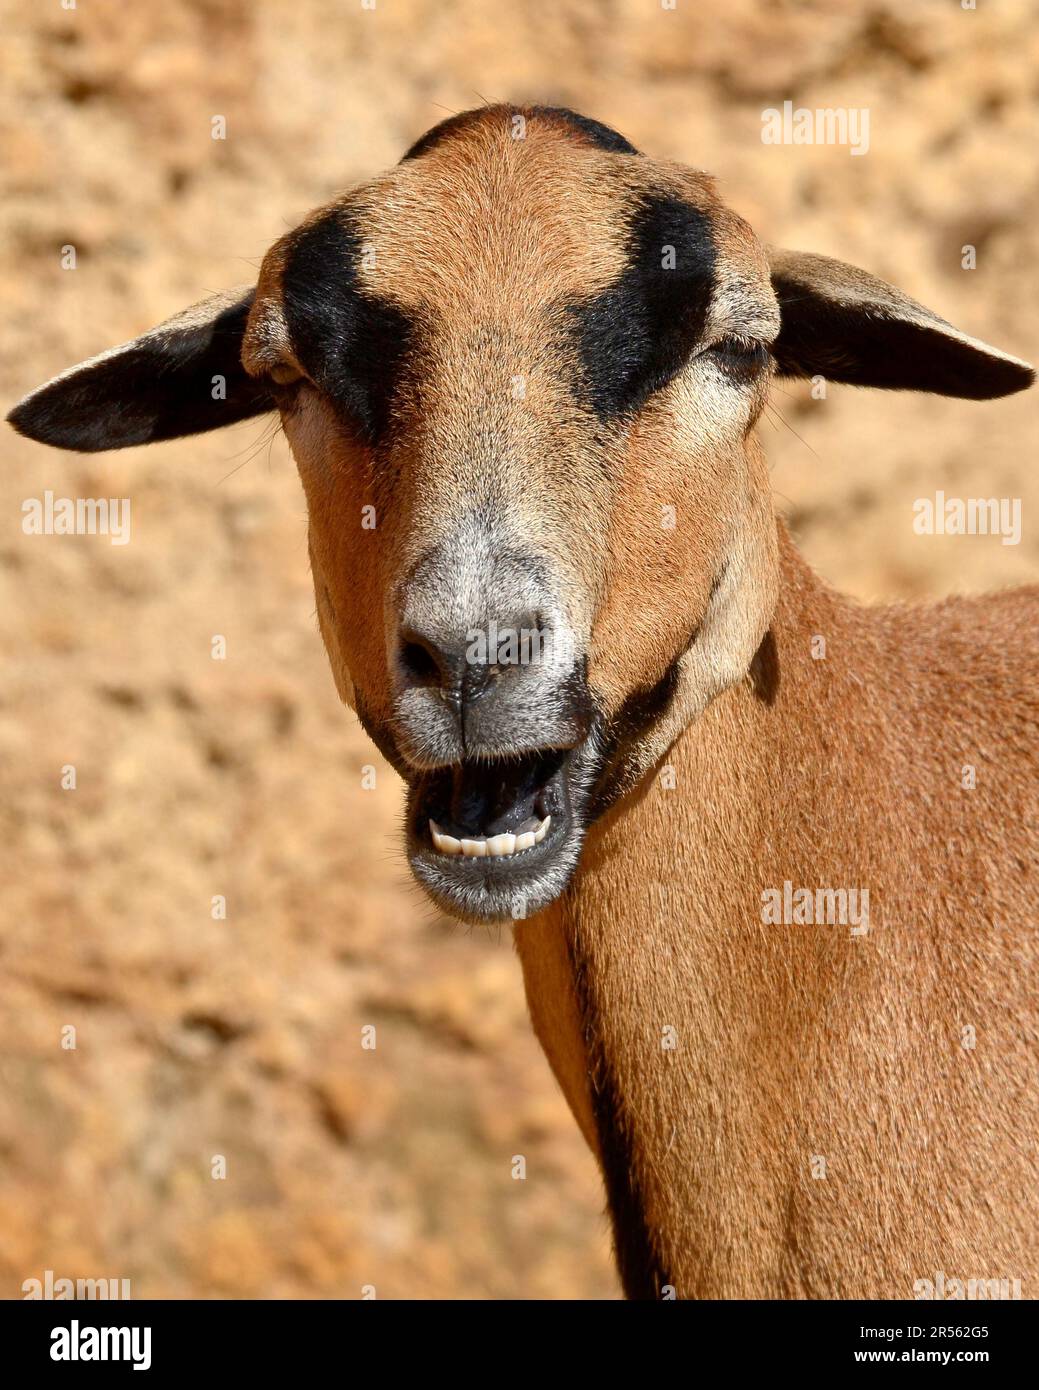 Porträt eines braunen Schafes von Kamerun Ovis aries, offener Mund mit deutlich sichtbaren Zähnen Stockfoto